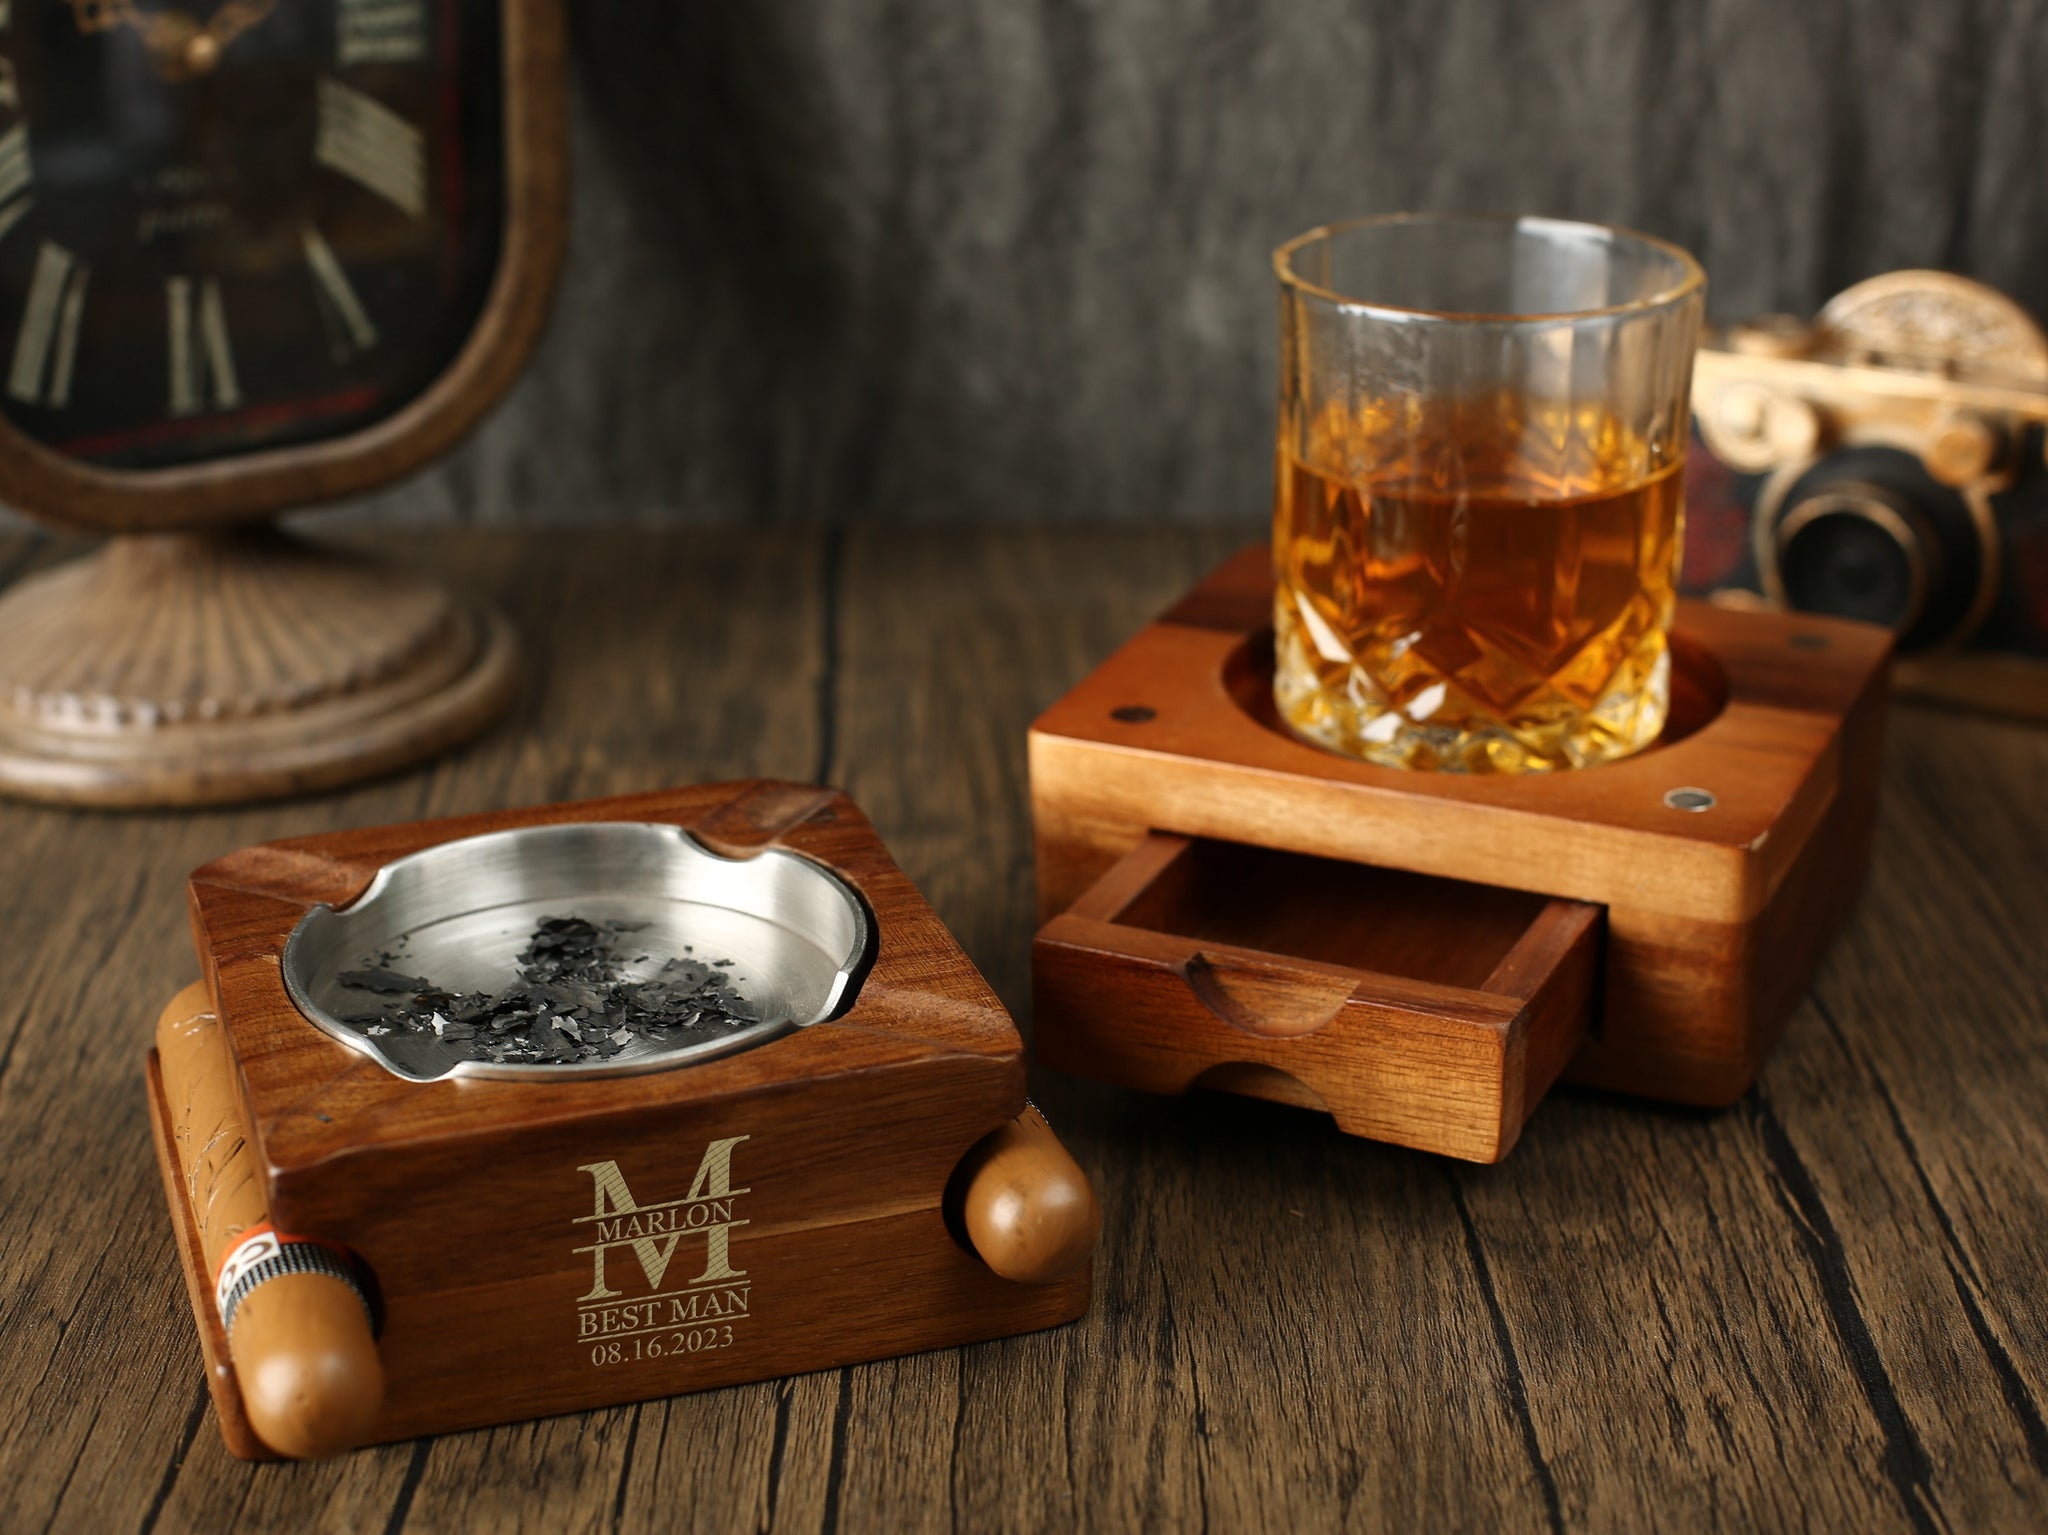 Cigar Ashtray Gift Set Wooden Tray Ashtray with Whiskey Glass Tray